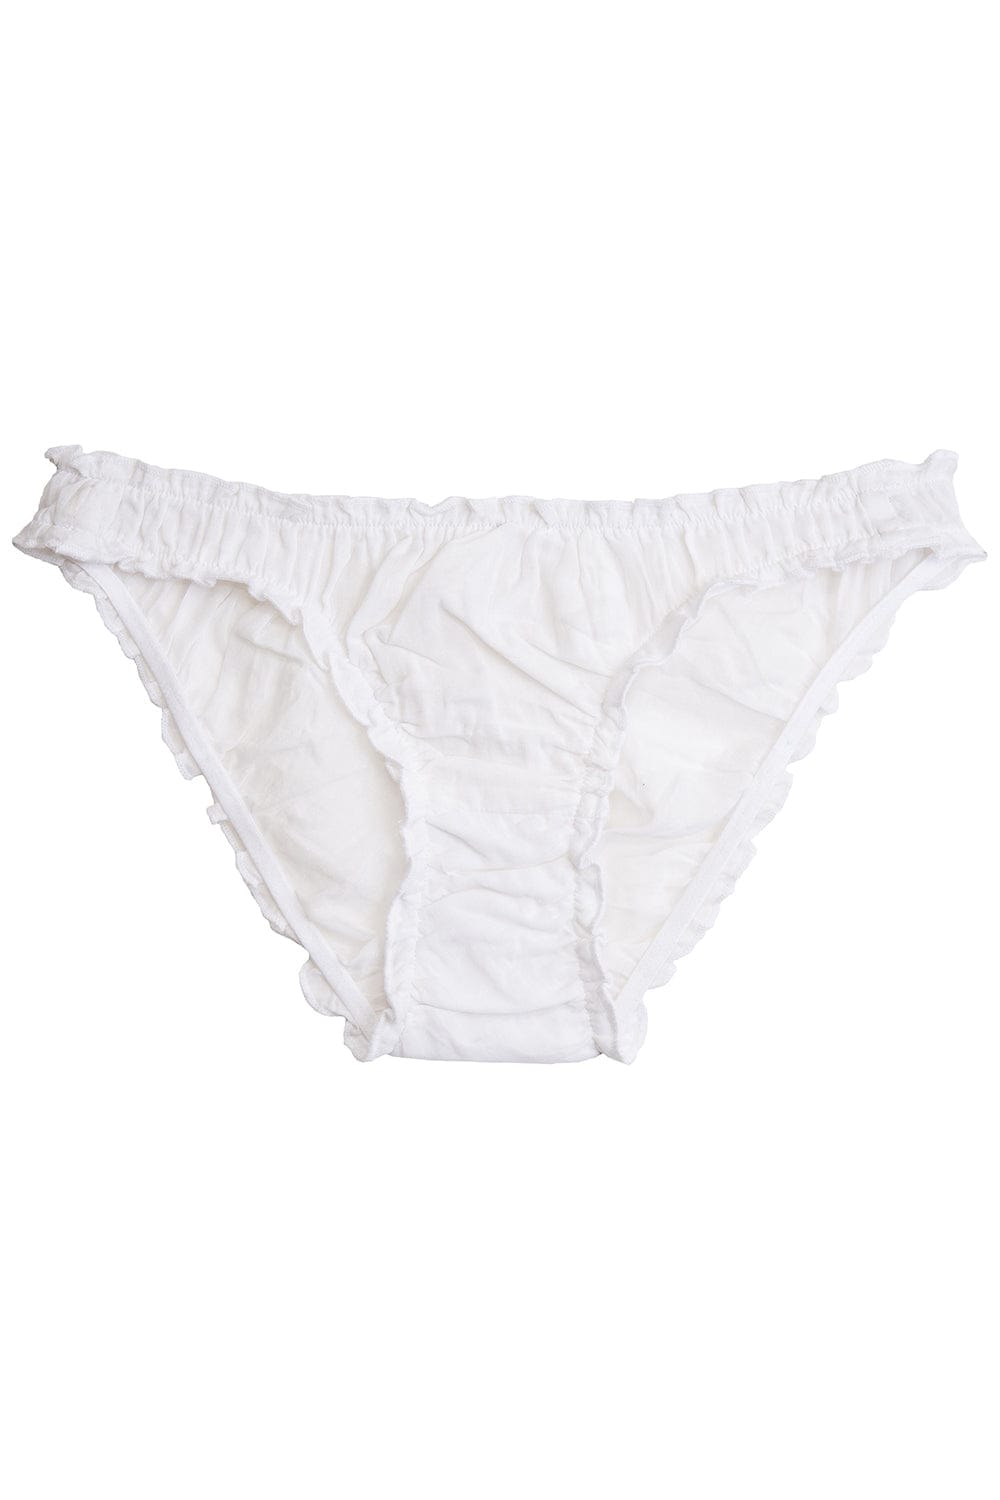 Fancy white panties 100% organic cotton - Germaine des prés –  germainedespres